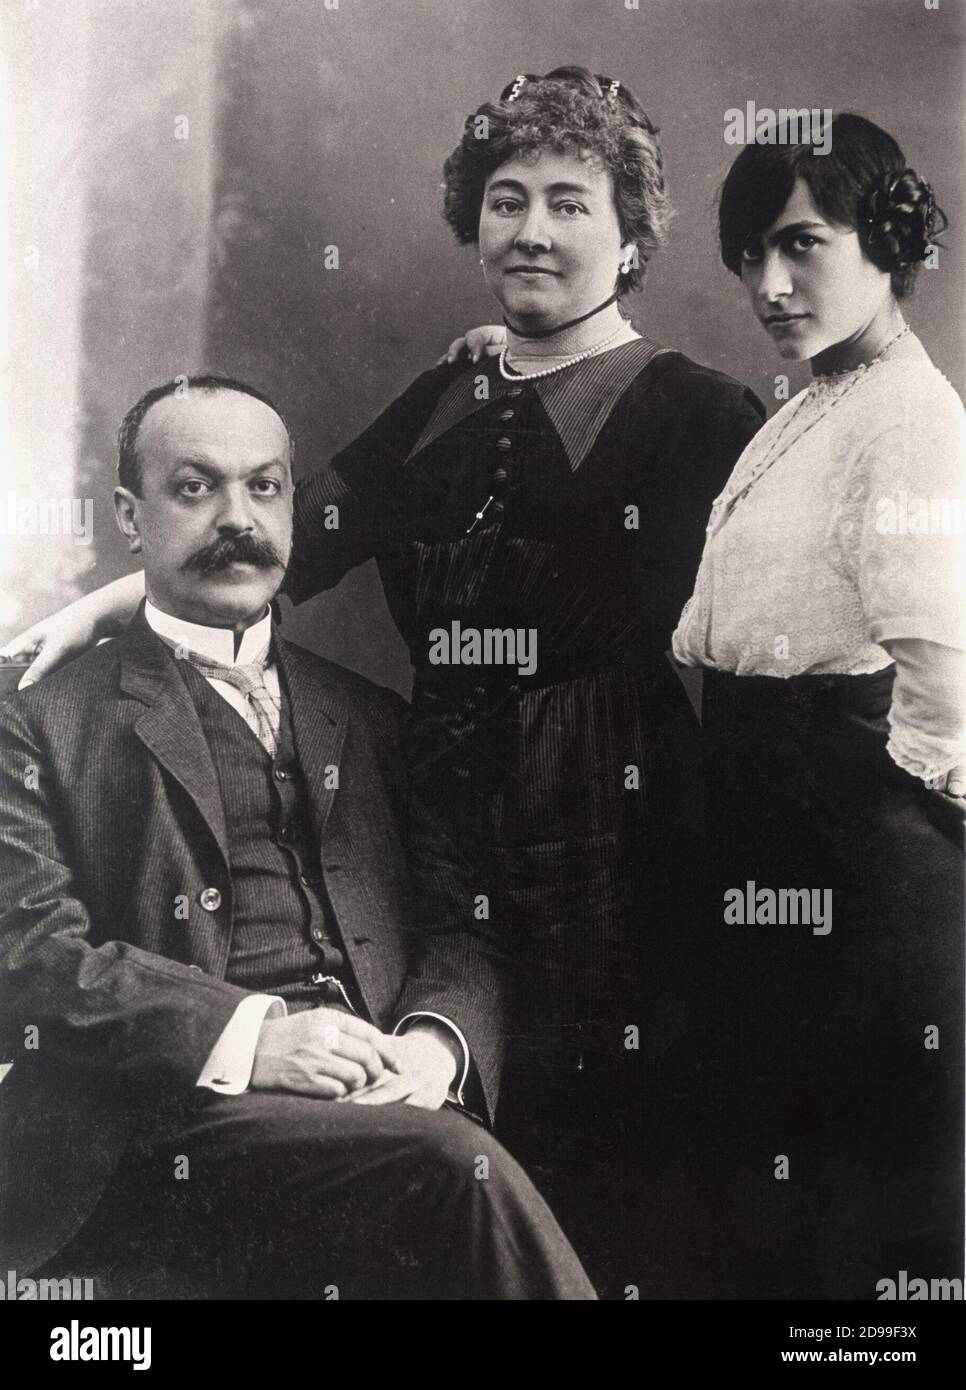 The italian writer ITALO SVEVO ( born Ettore Schmitz , Trieste 1861 - Motta  di Livenza 1928 ) with his wife Livia Veneziani and daugther ---- Archivio  GBB Stock Photo - Alamy